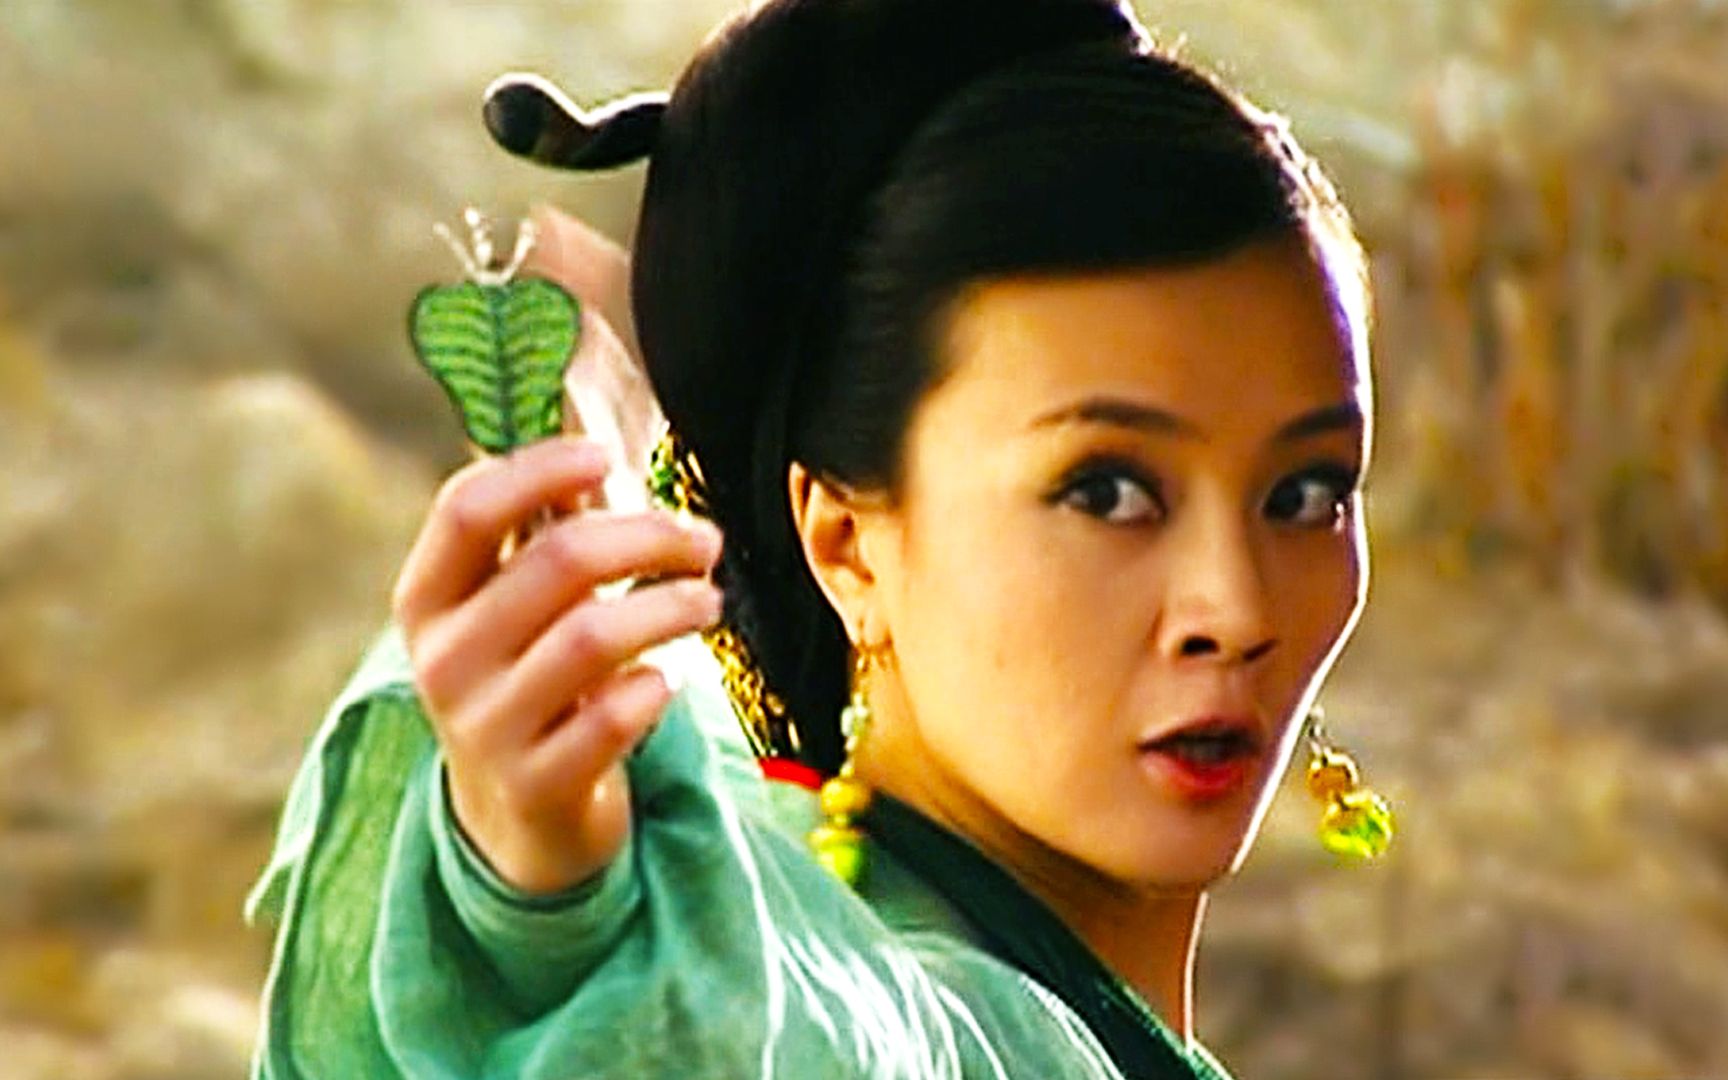 铁扇公主凭什么拥有芭蕉扇?她的师父是谁?与地藏王菩萨有关!